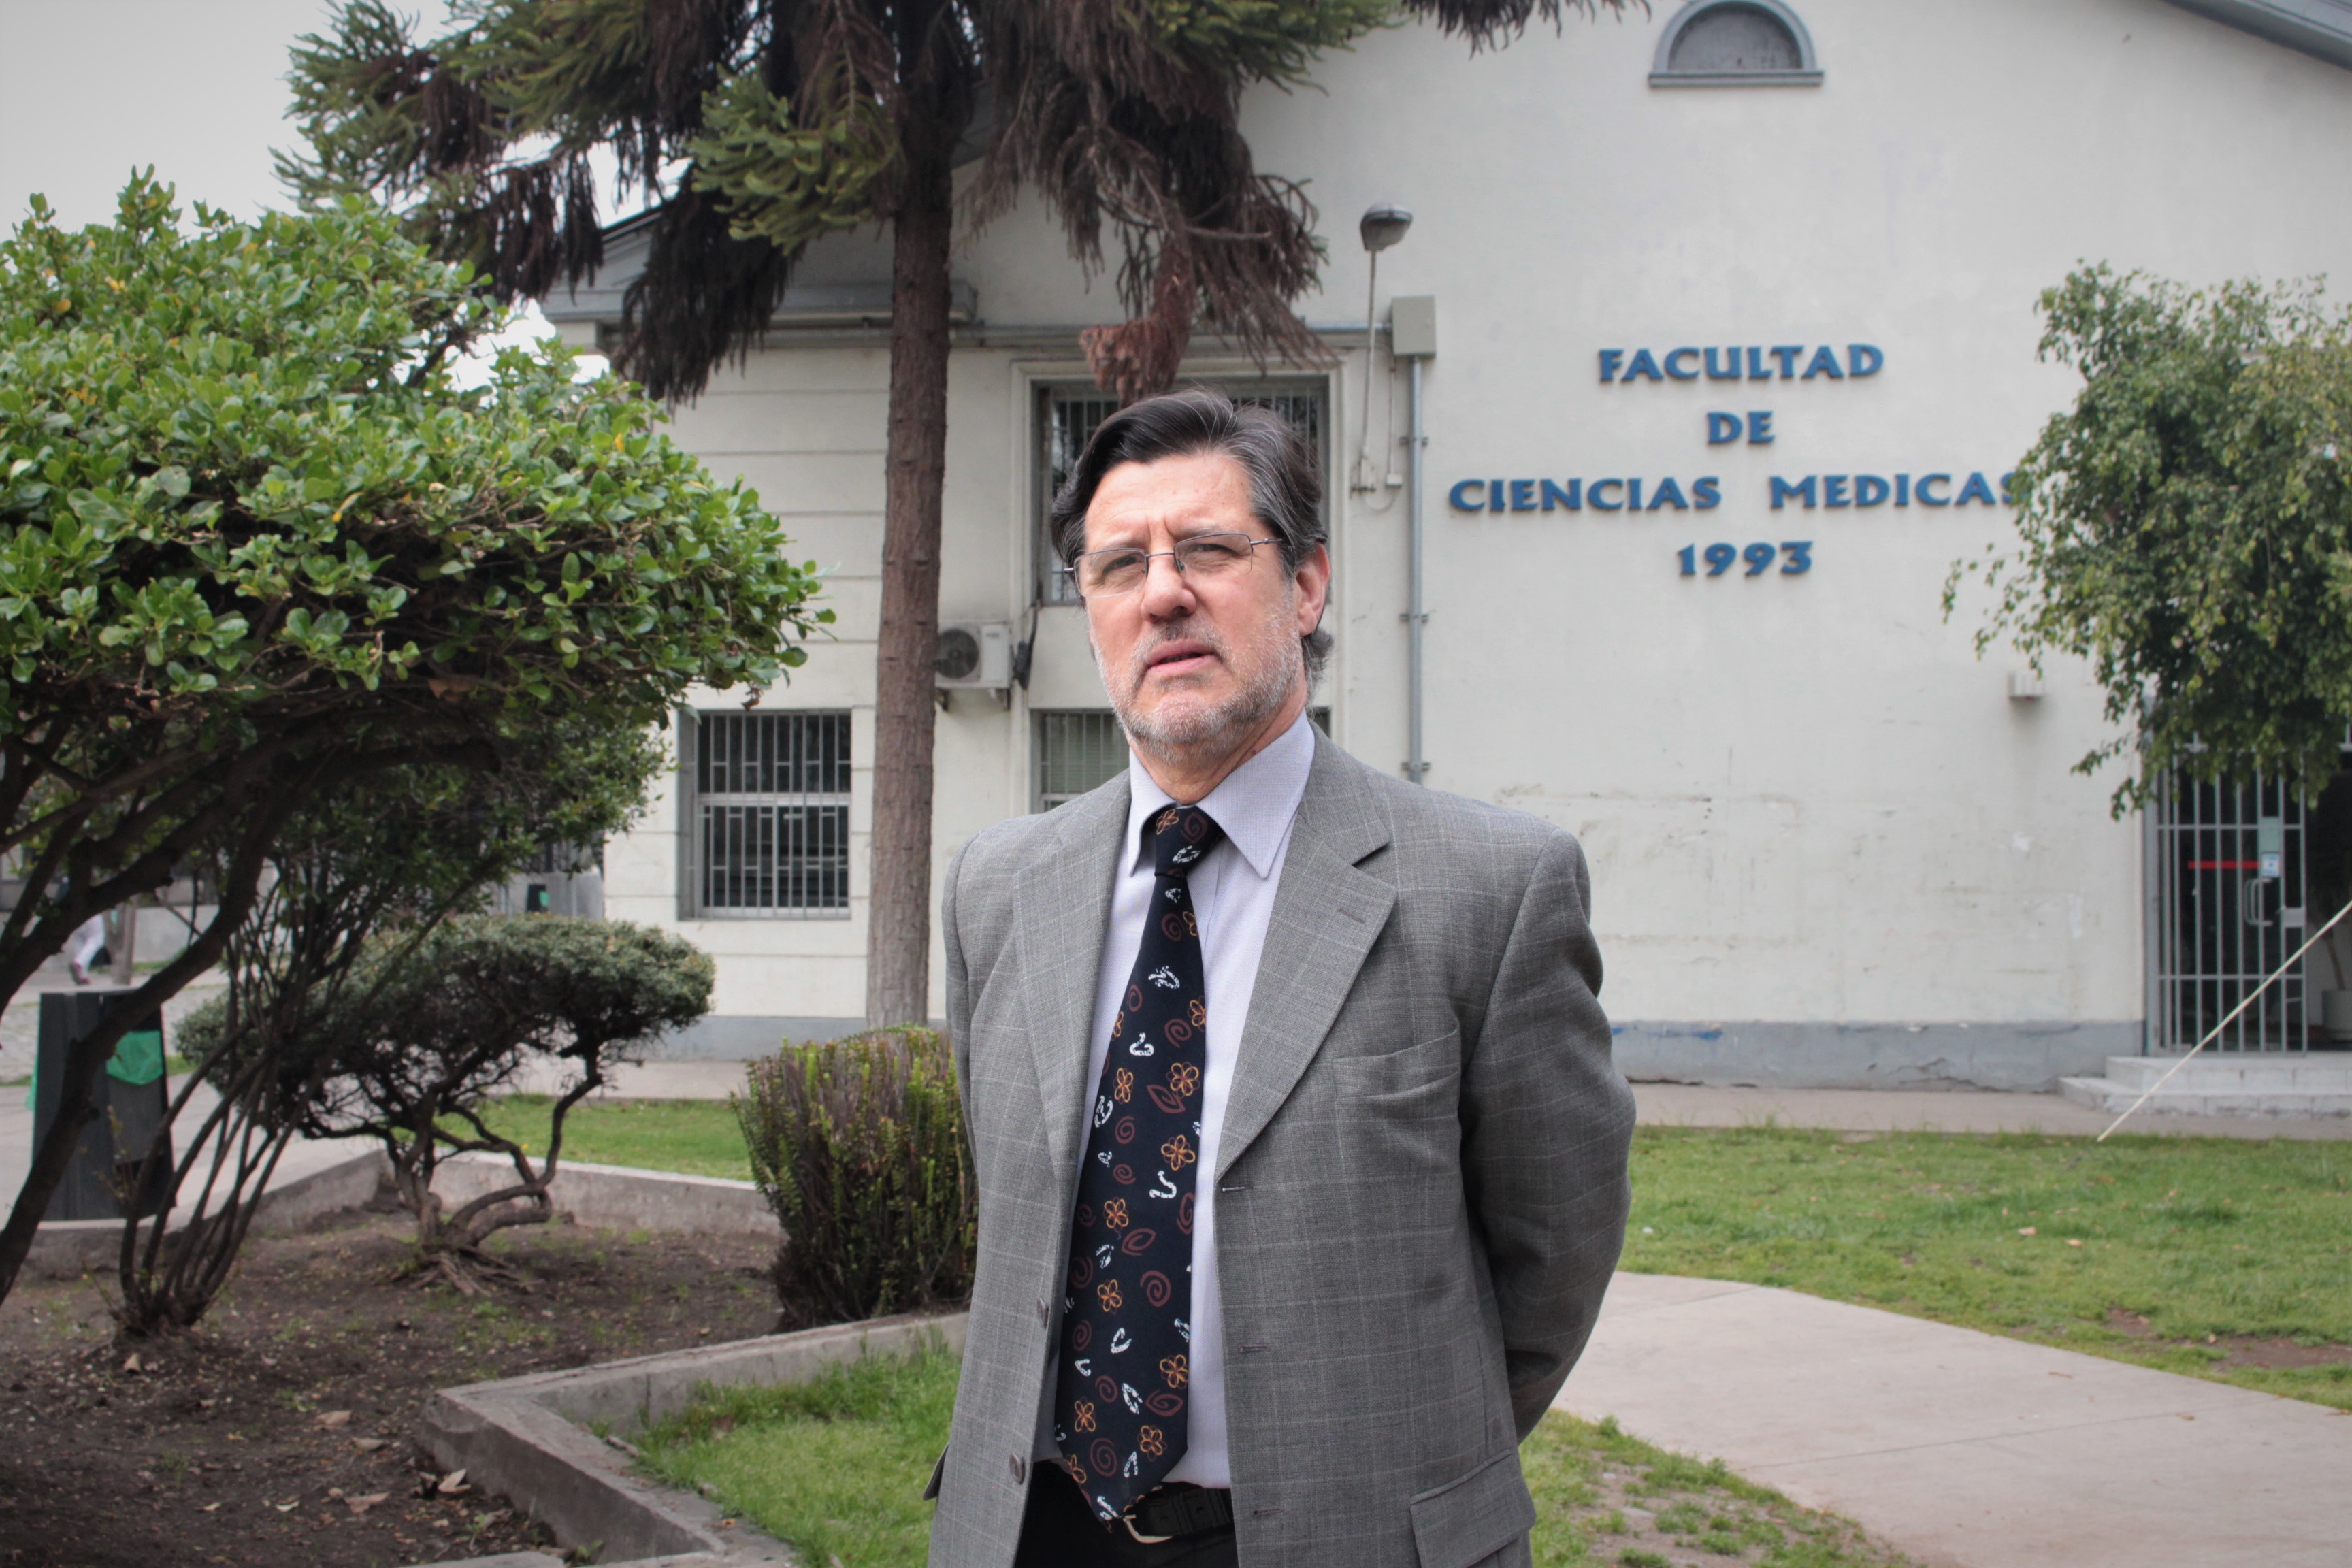 Stress laboral crónico, sin respuestas – Adrián Torres Canales, profesor investigador Escuela de Medicina, Universidad de Santiago de Chile